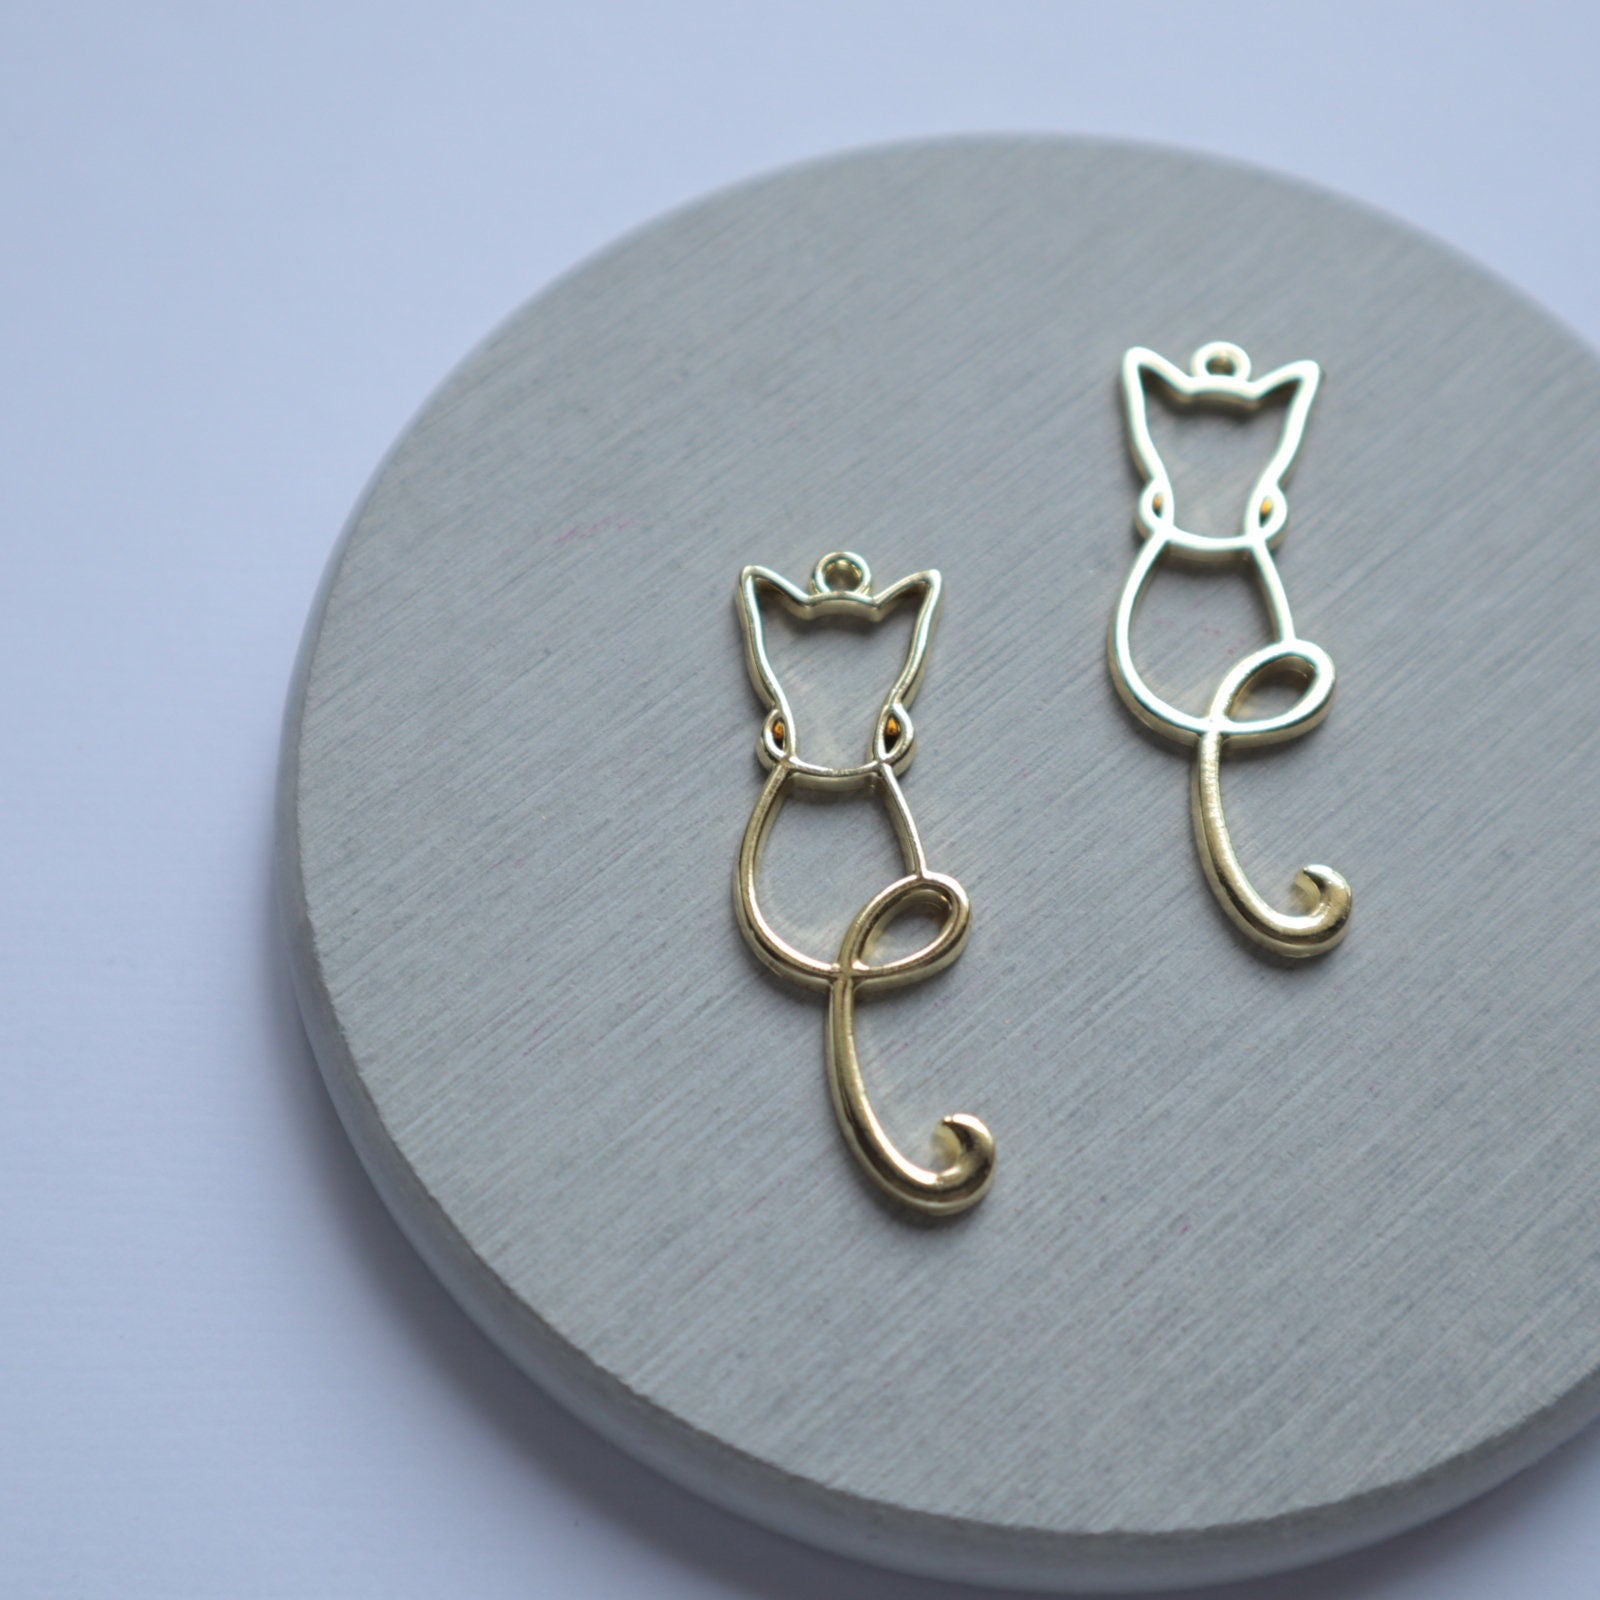 10 pcs Cat Earrings components Earrings findings DIY jewelry